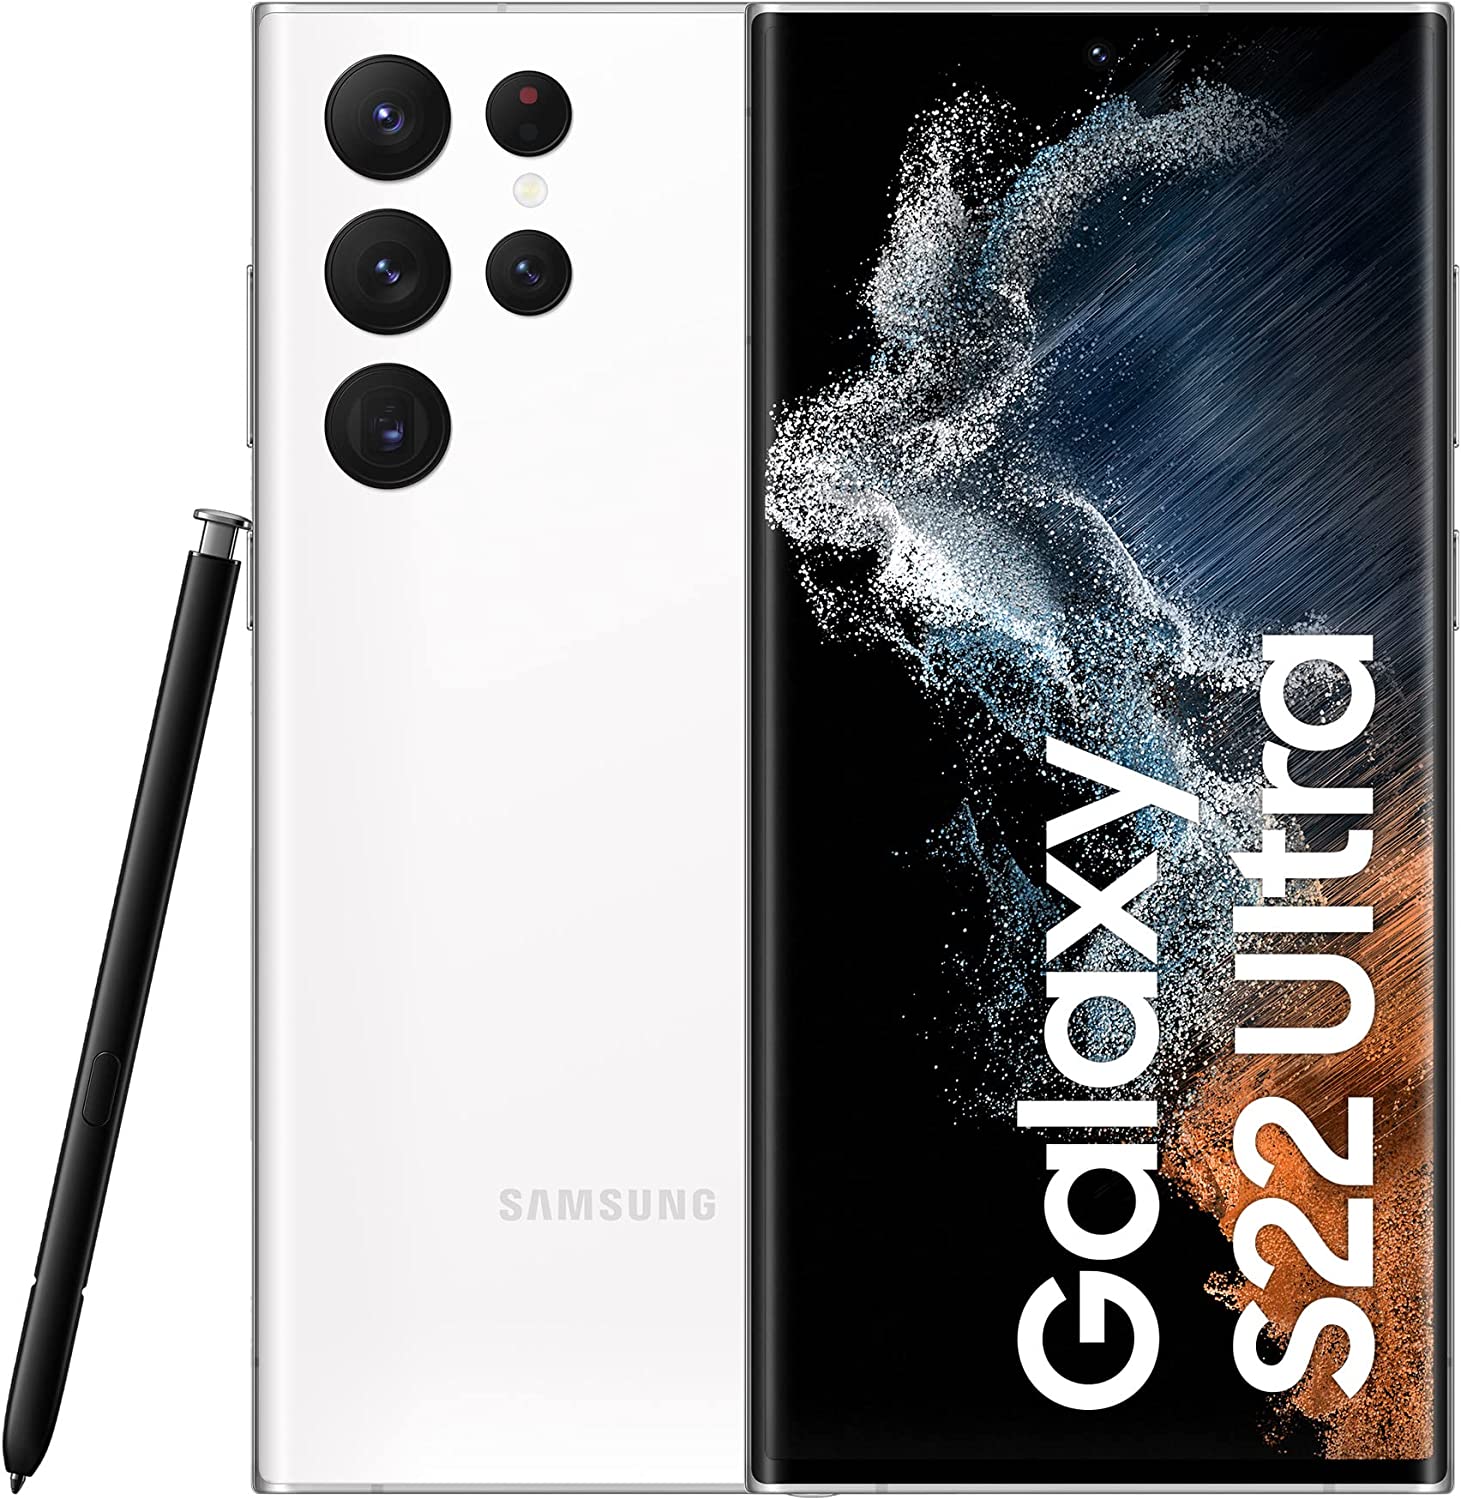 SAMSUNG Celular Samsung Galaxy S22 Plus 5G 128GB 8GB RAM - Blanco